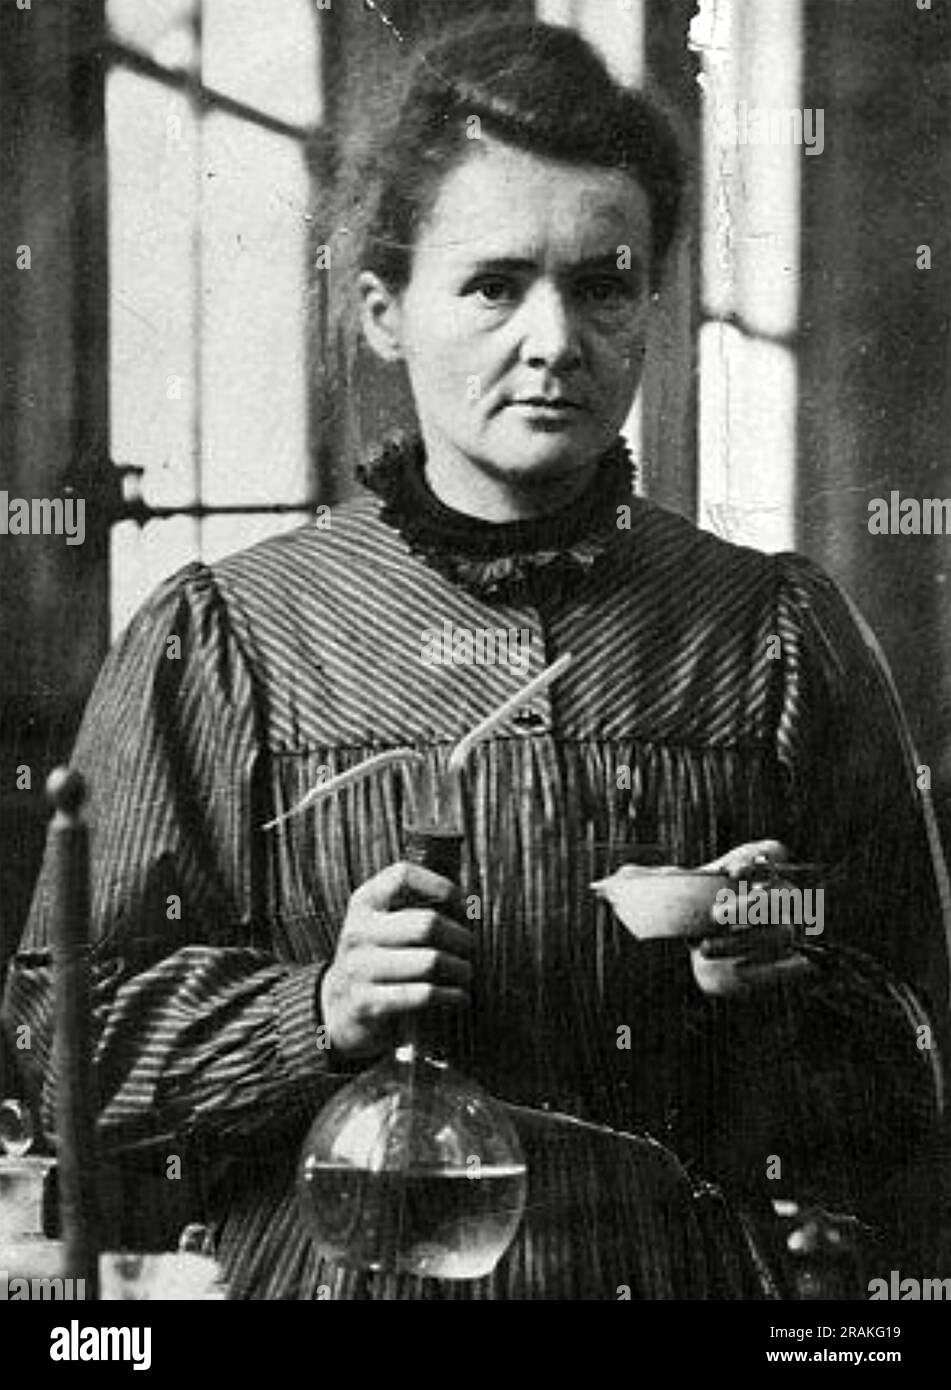 MARIE CURIE (1887-1934) Polnisch-französische Physikerin und Chemikerin, die Pionierarbeit in der Radioaktivitätsforschung leistete Stockfoto